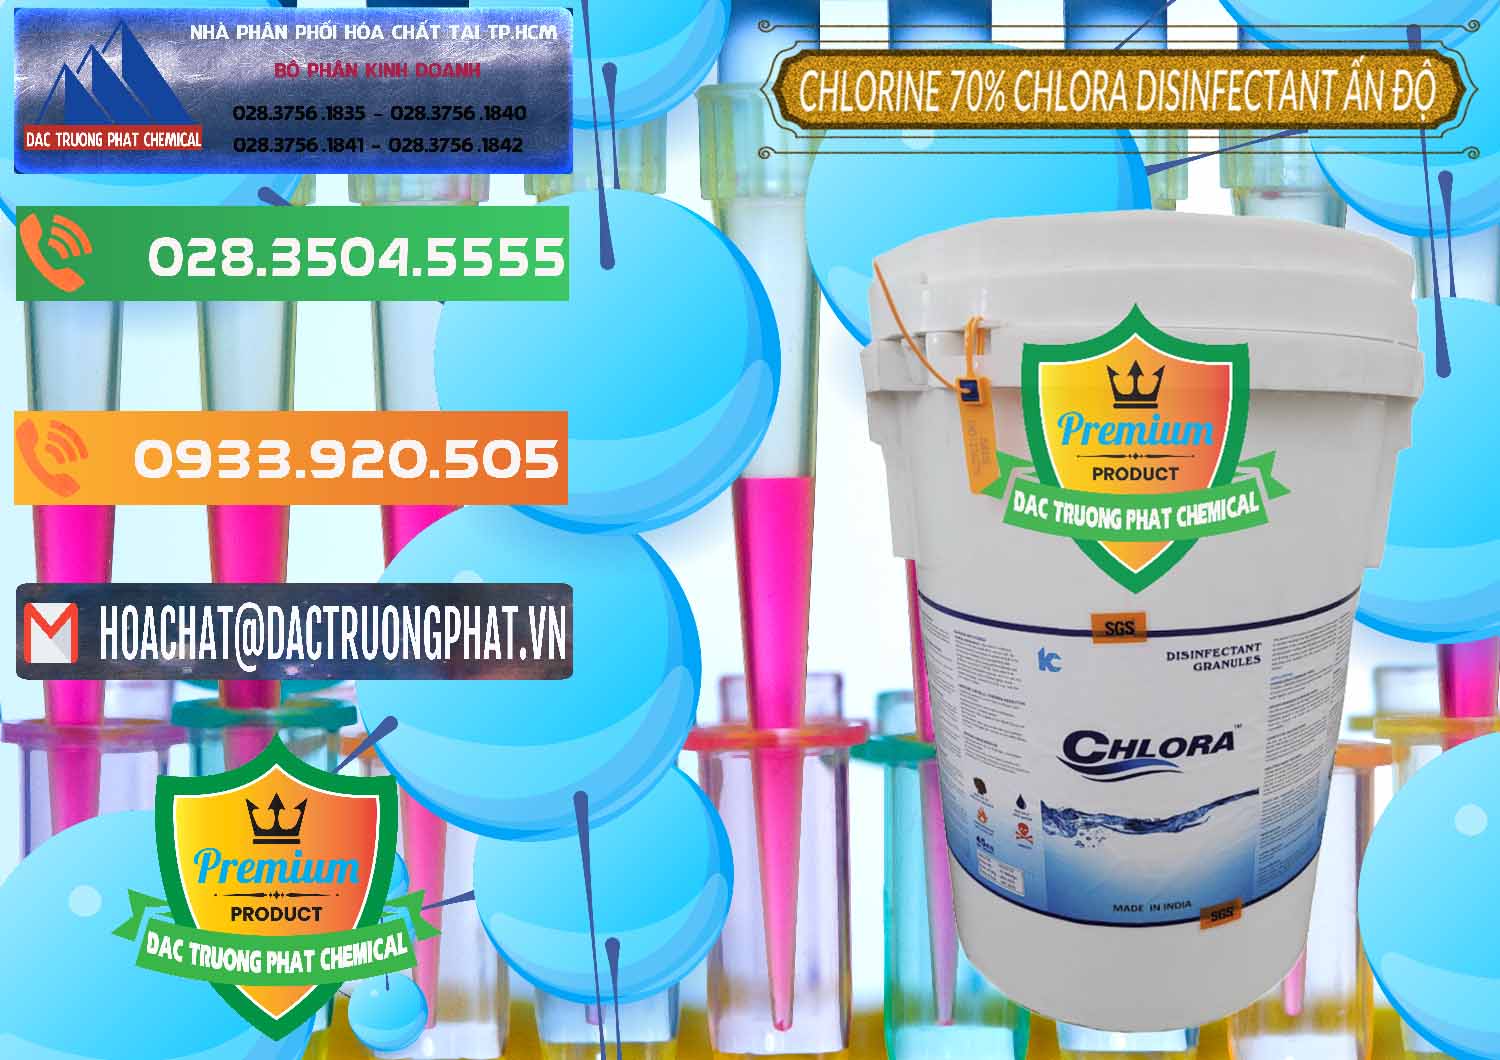 Chuyên bán ( phân phối ) Chlorine – Clorin 70% Chlora Disinfectant Ấn Độ India - 0213 - Chuyên cung cấp ( bán ) hóa chất tại TP.HCM - hoachatxulynuoc.com.vn